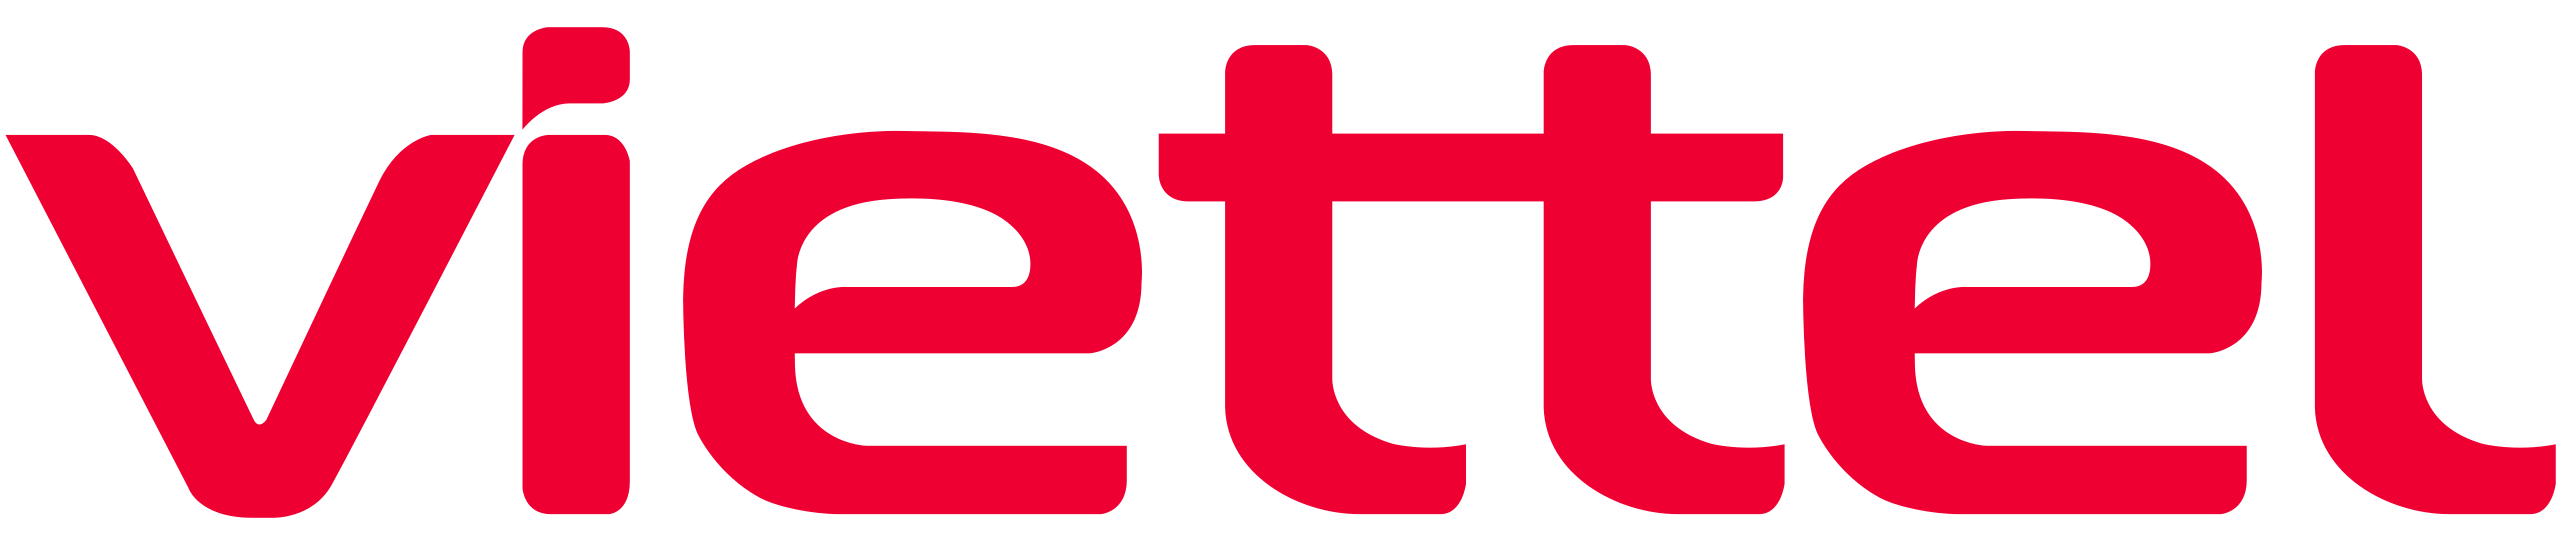 Viettel Brand Logo